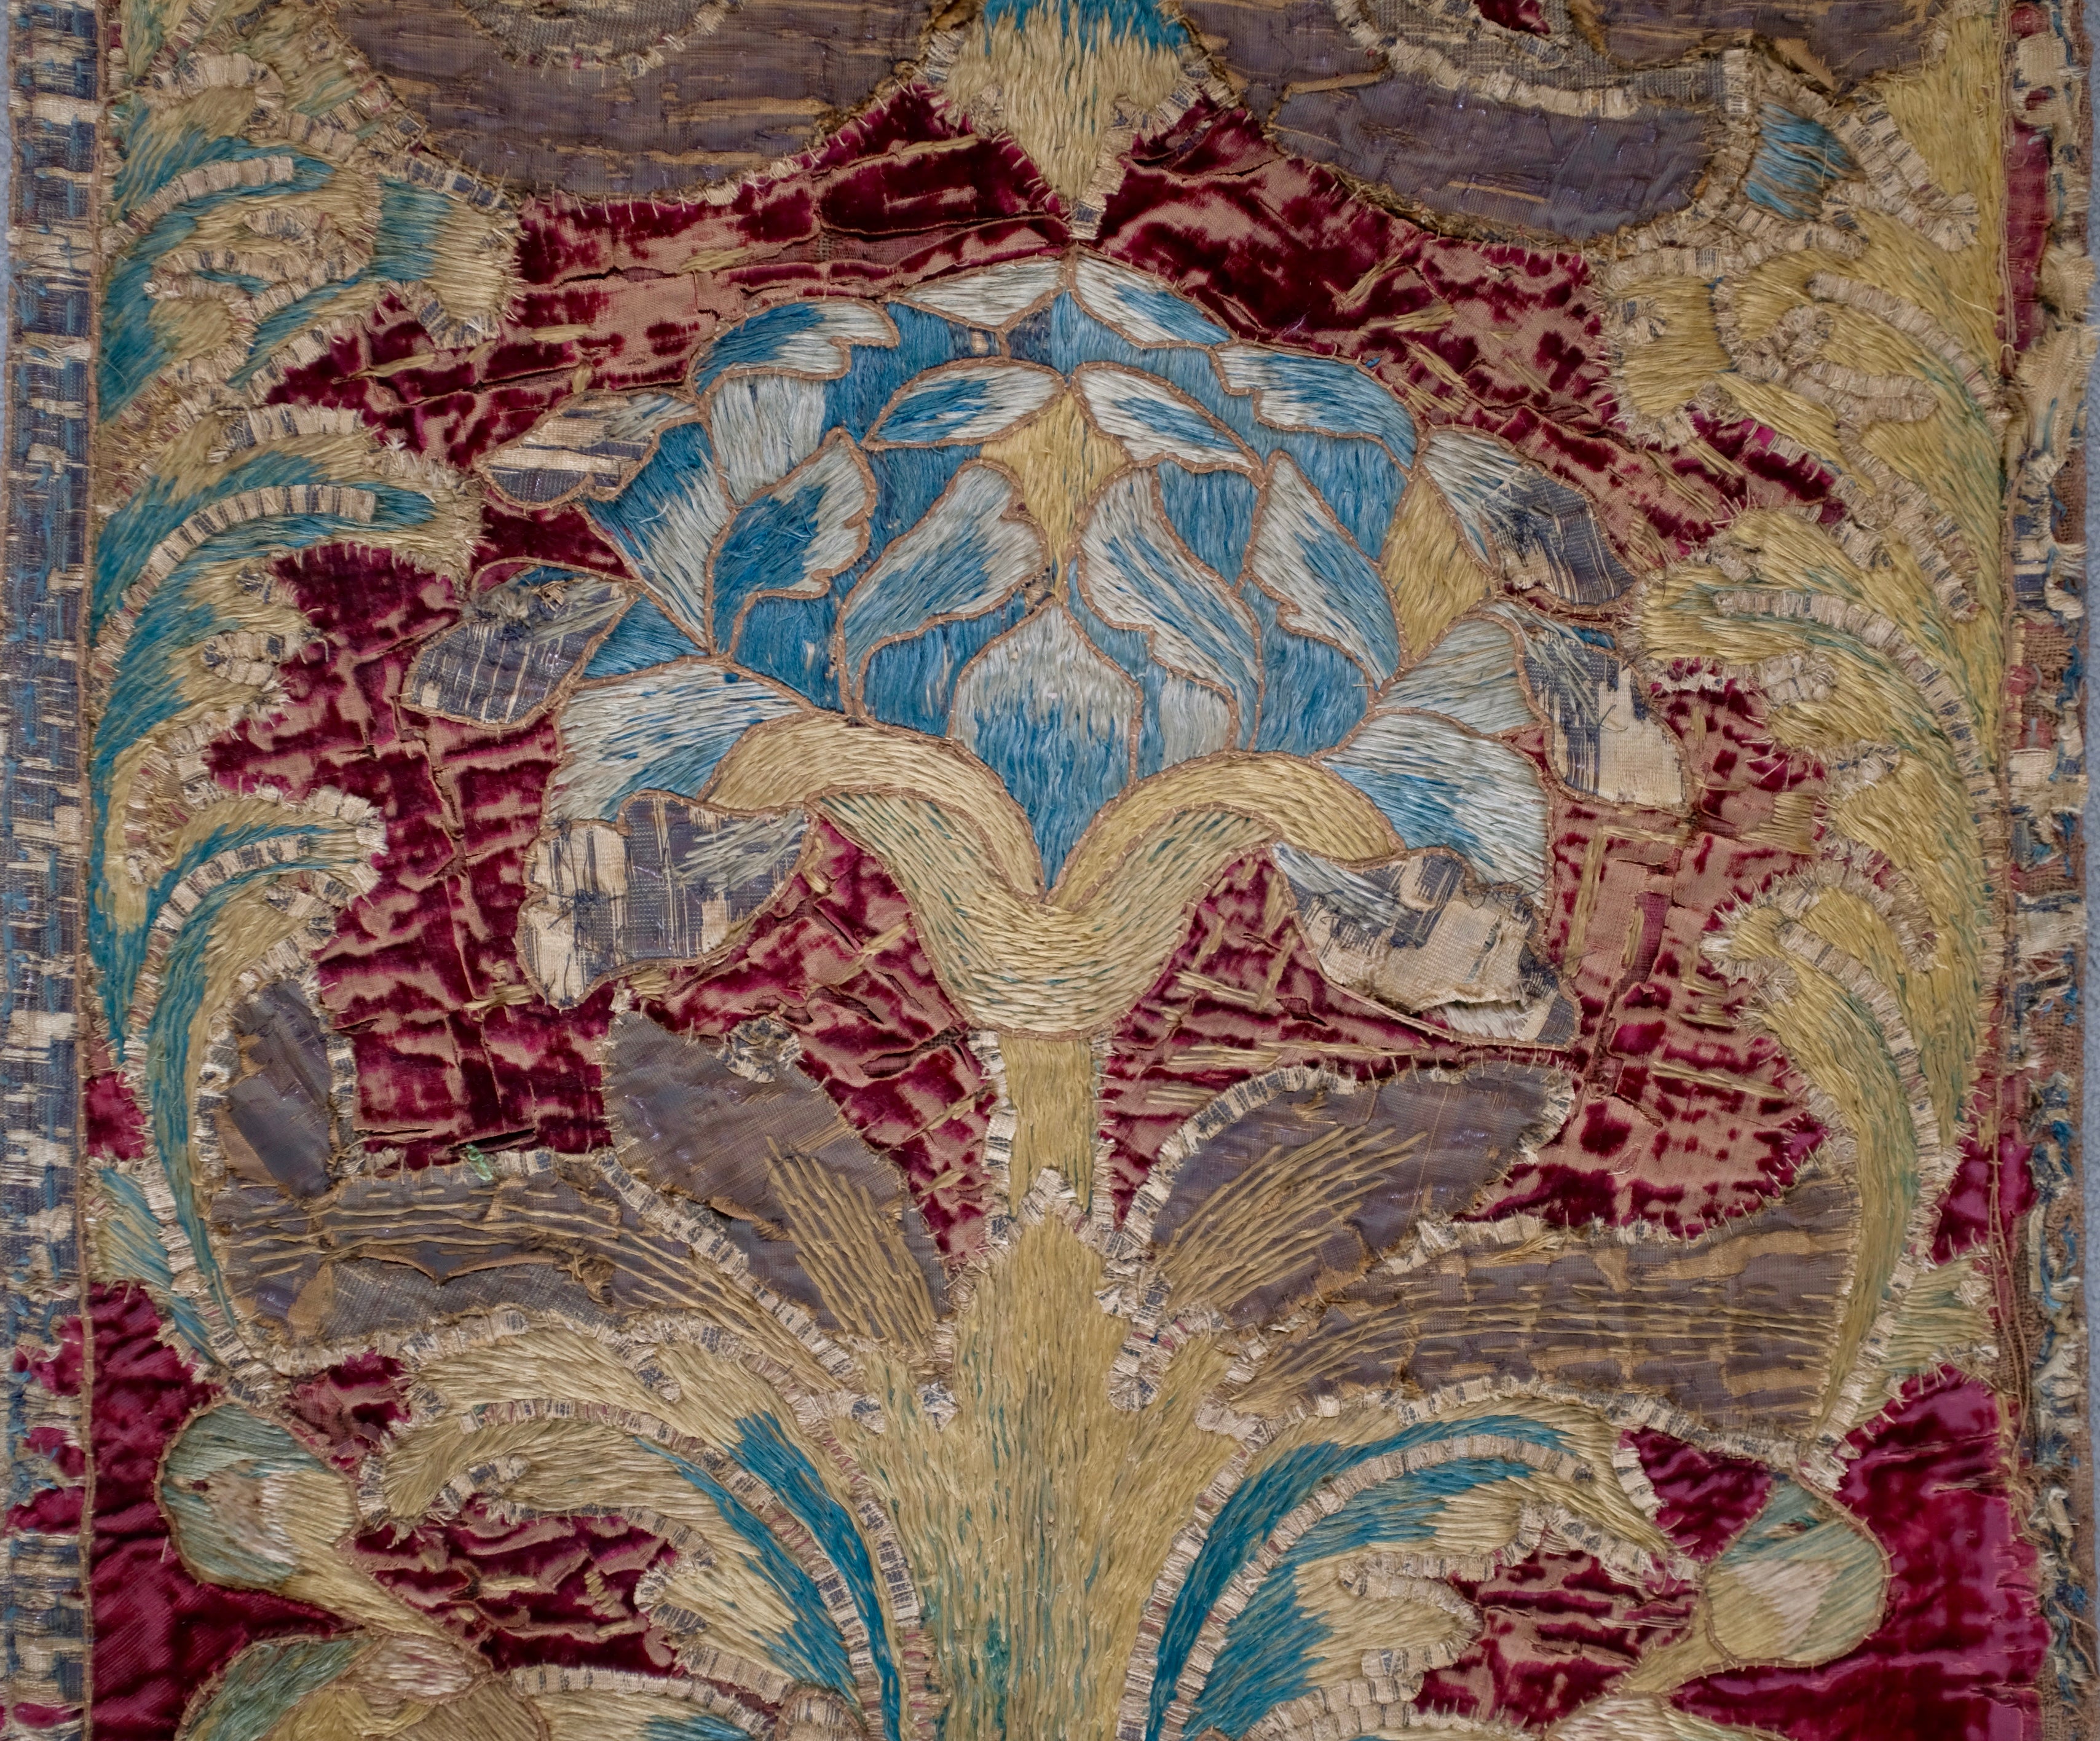 16th Century Embroidery Renaissance Velvet Textile Parrots  Birds